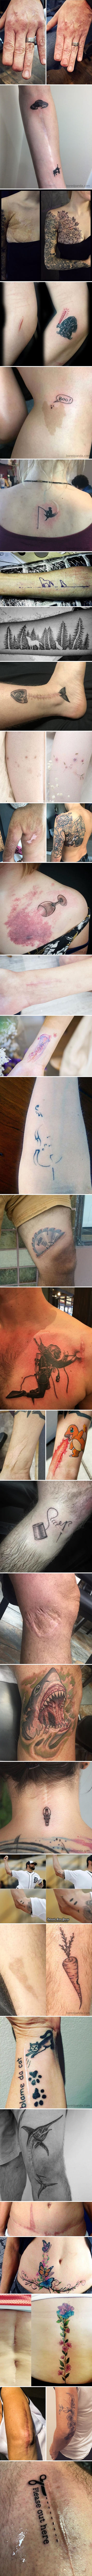 Tetovirali su se kako bi prekrili ili nadopunili ožiljke i nedostatke, rezultat izgleda nevjerojatno dobro